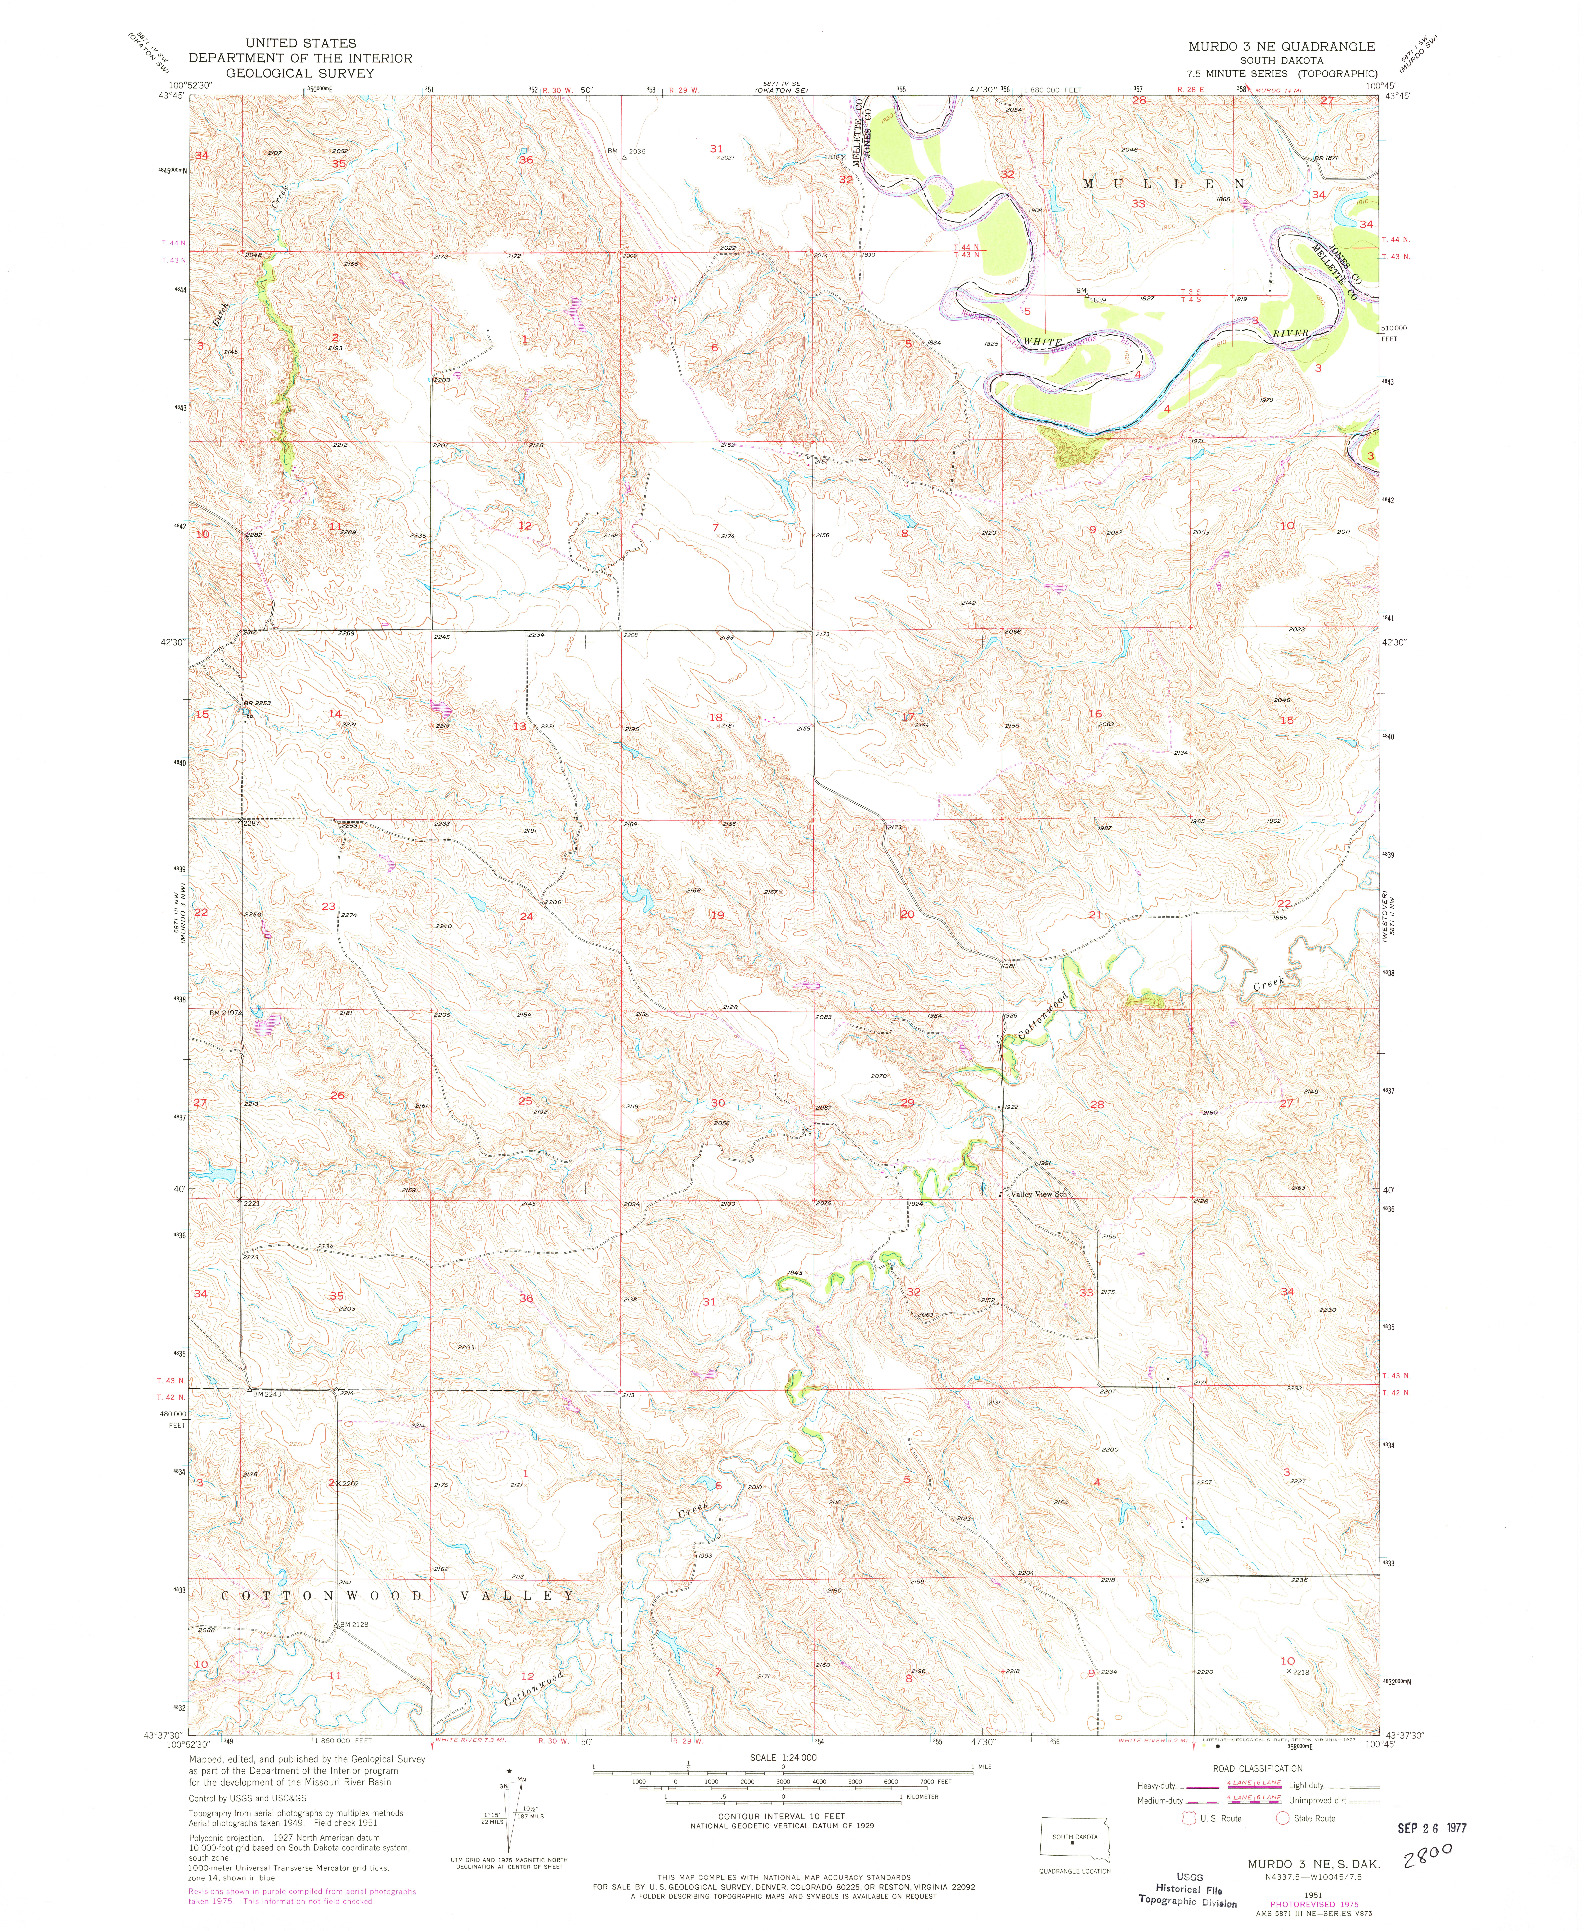 USGS 1:24000-SCALE QUADRANGLE FOR MURDO 3 NE, SD 1951